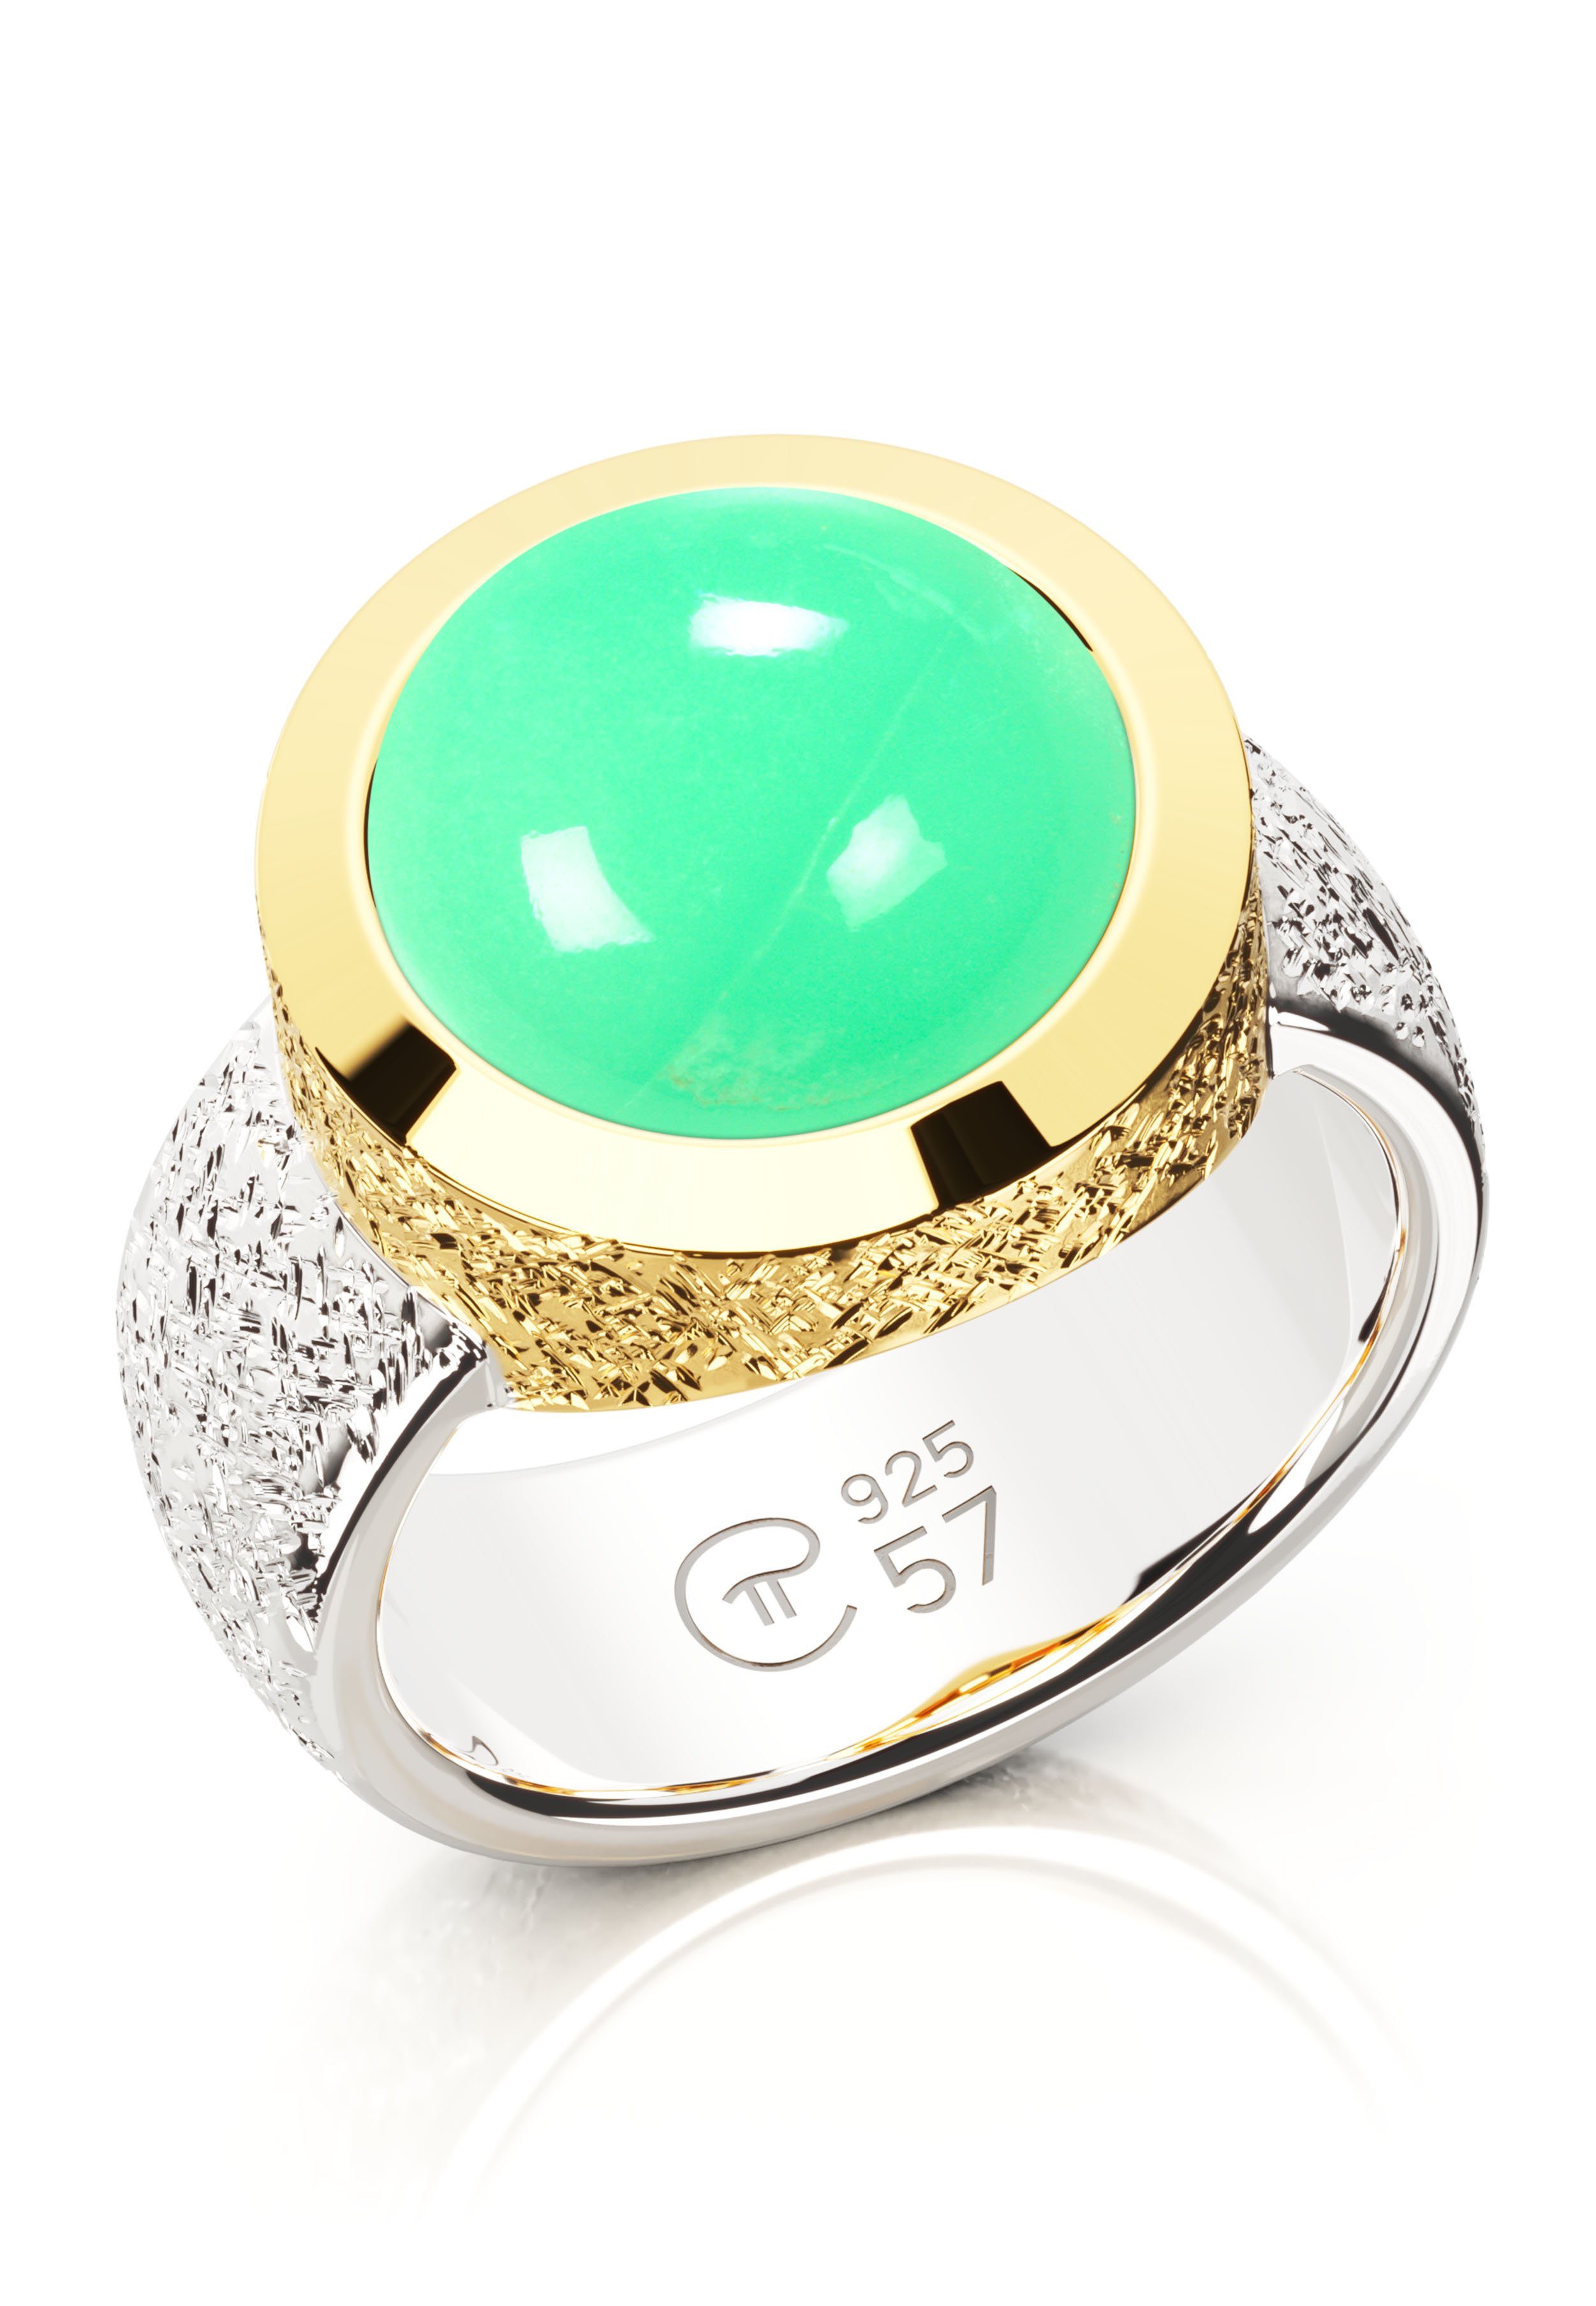 Silber 925 Chrysopras PiArt Silberring, grün Edelstein vergoldet echt -